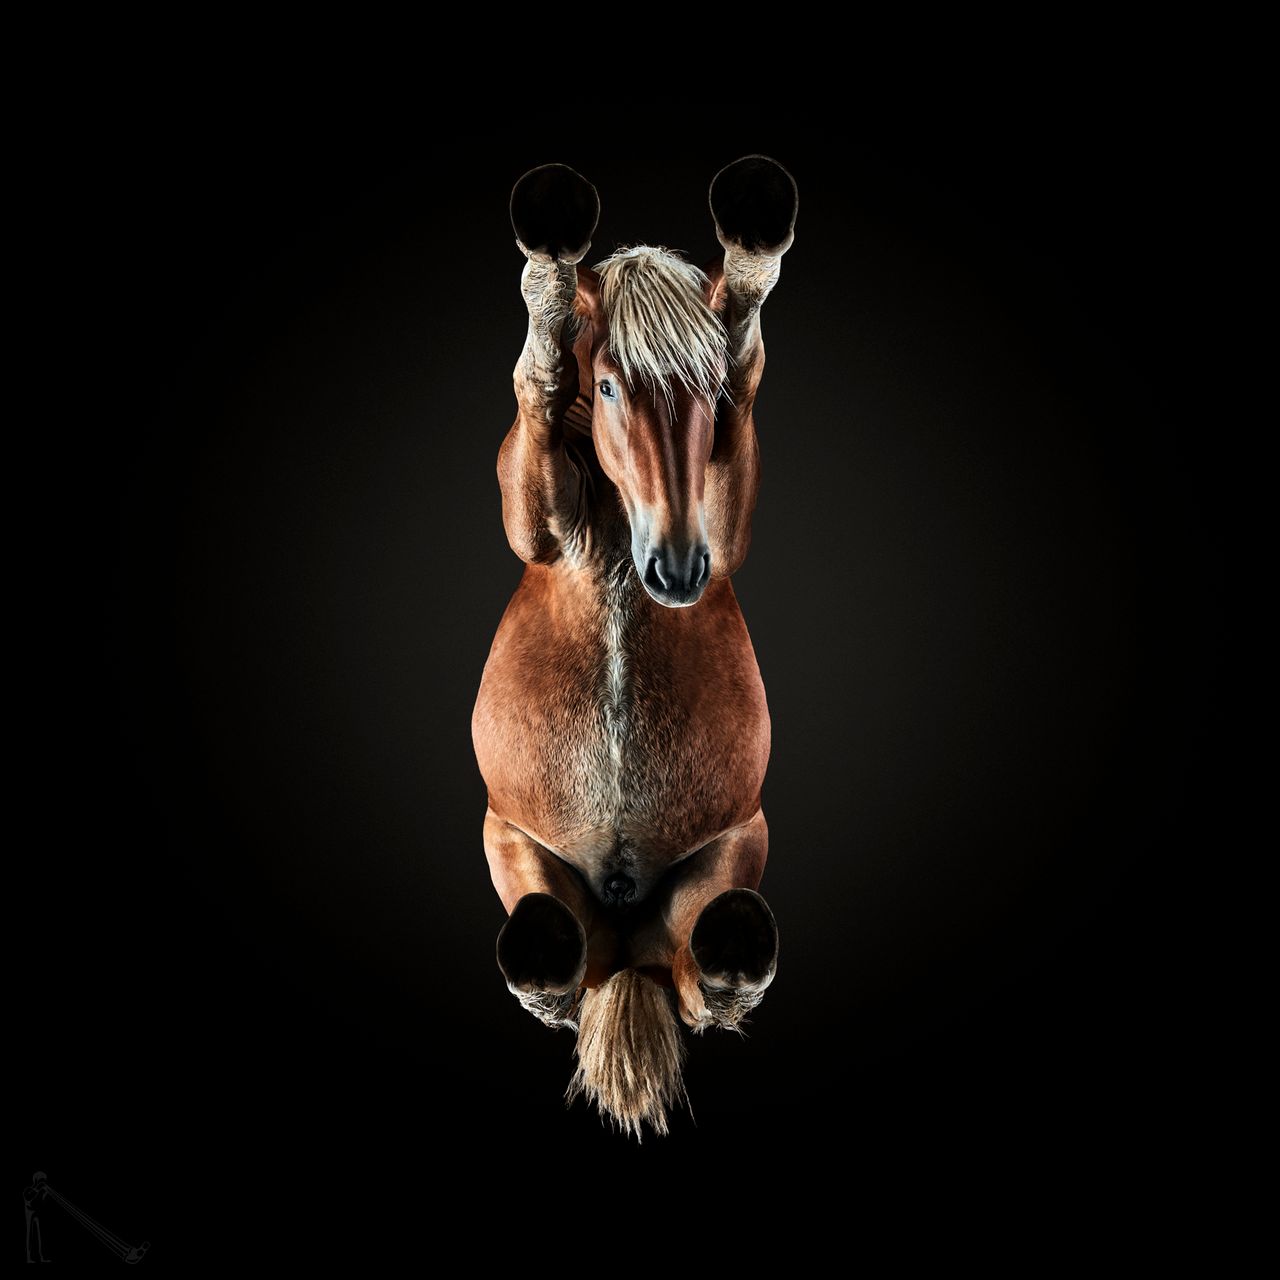 Dla tych, którzy nie wiedzą, jak dokładnie wygląda koń, Andrius Burba stworzył projekt fotograficzny, w którym koncentruje się na niecodziennej perspektywie spojrzenia na zwierzęta. Normalnie widzimy konie z przodu lub z boku, ewentualnie z perspektywy jeźdźca, ale nie sądzę, by wszyscy wiedzieli, jak wygląda końskie „podwozie”.